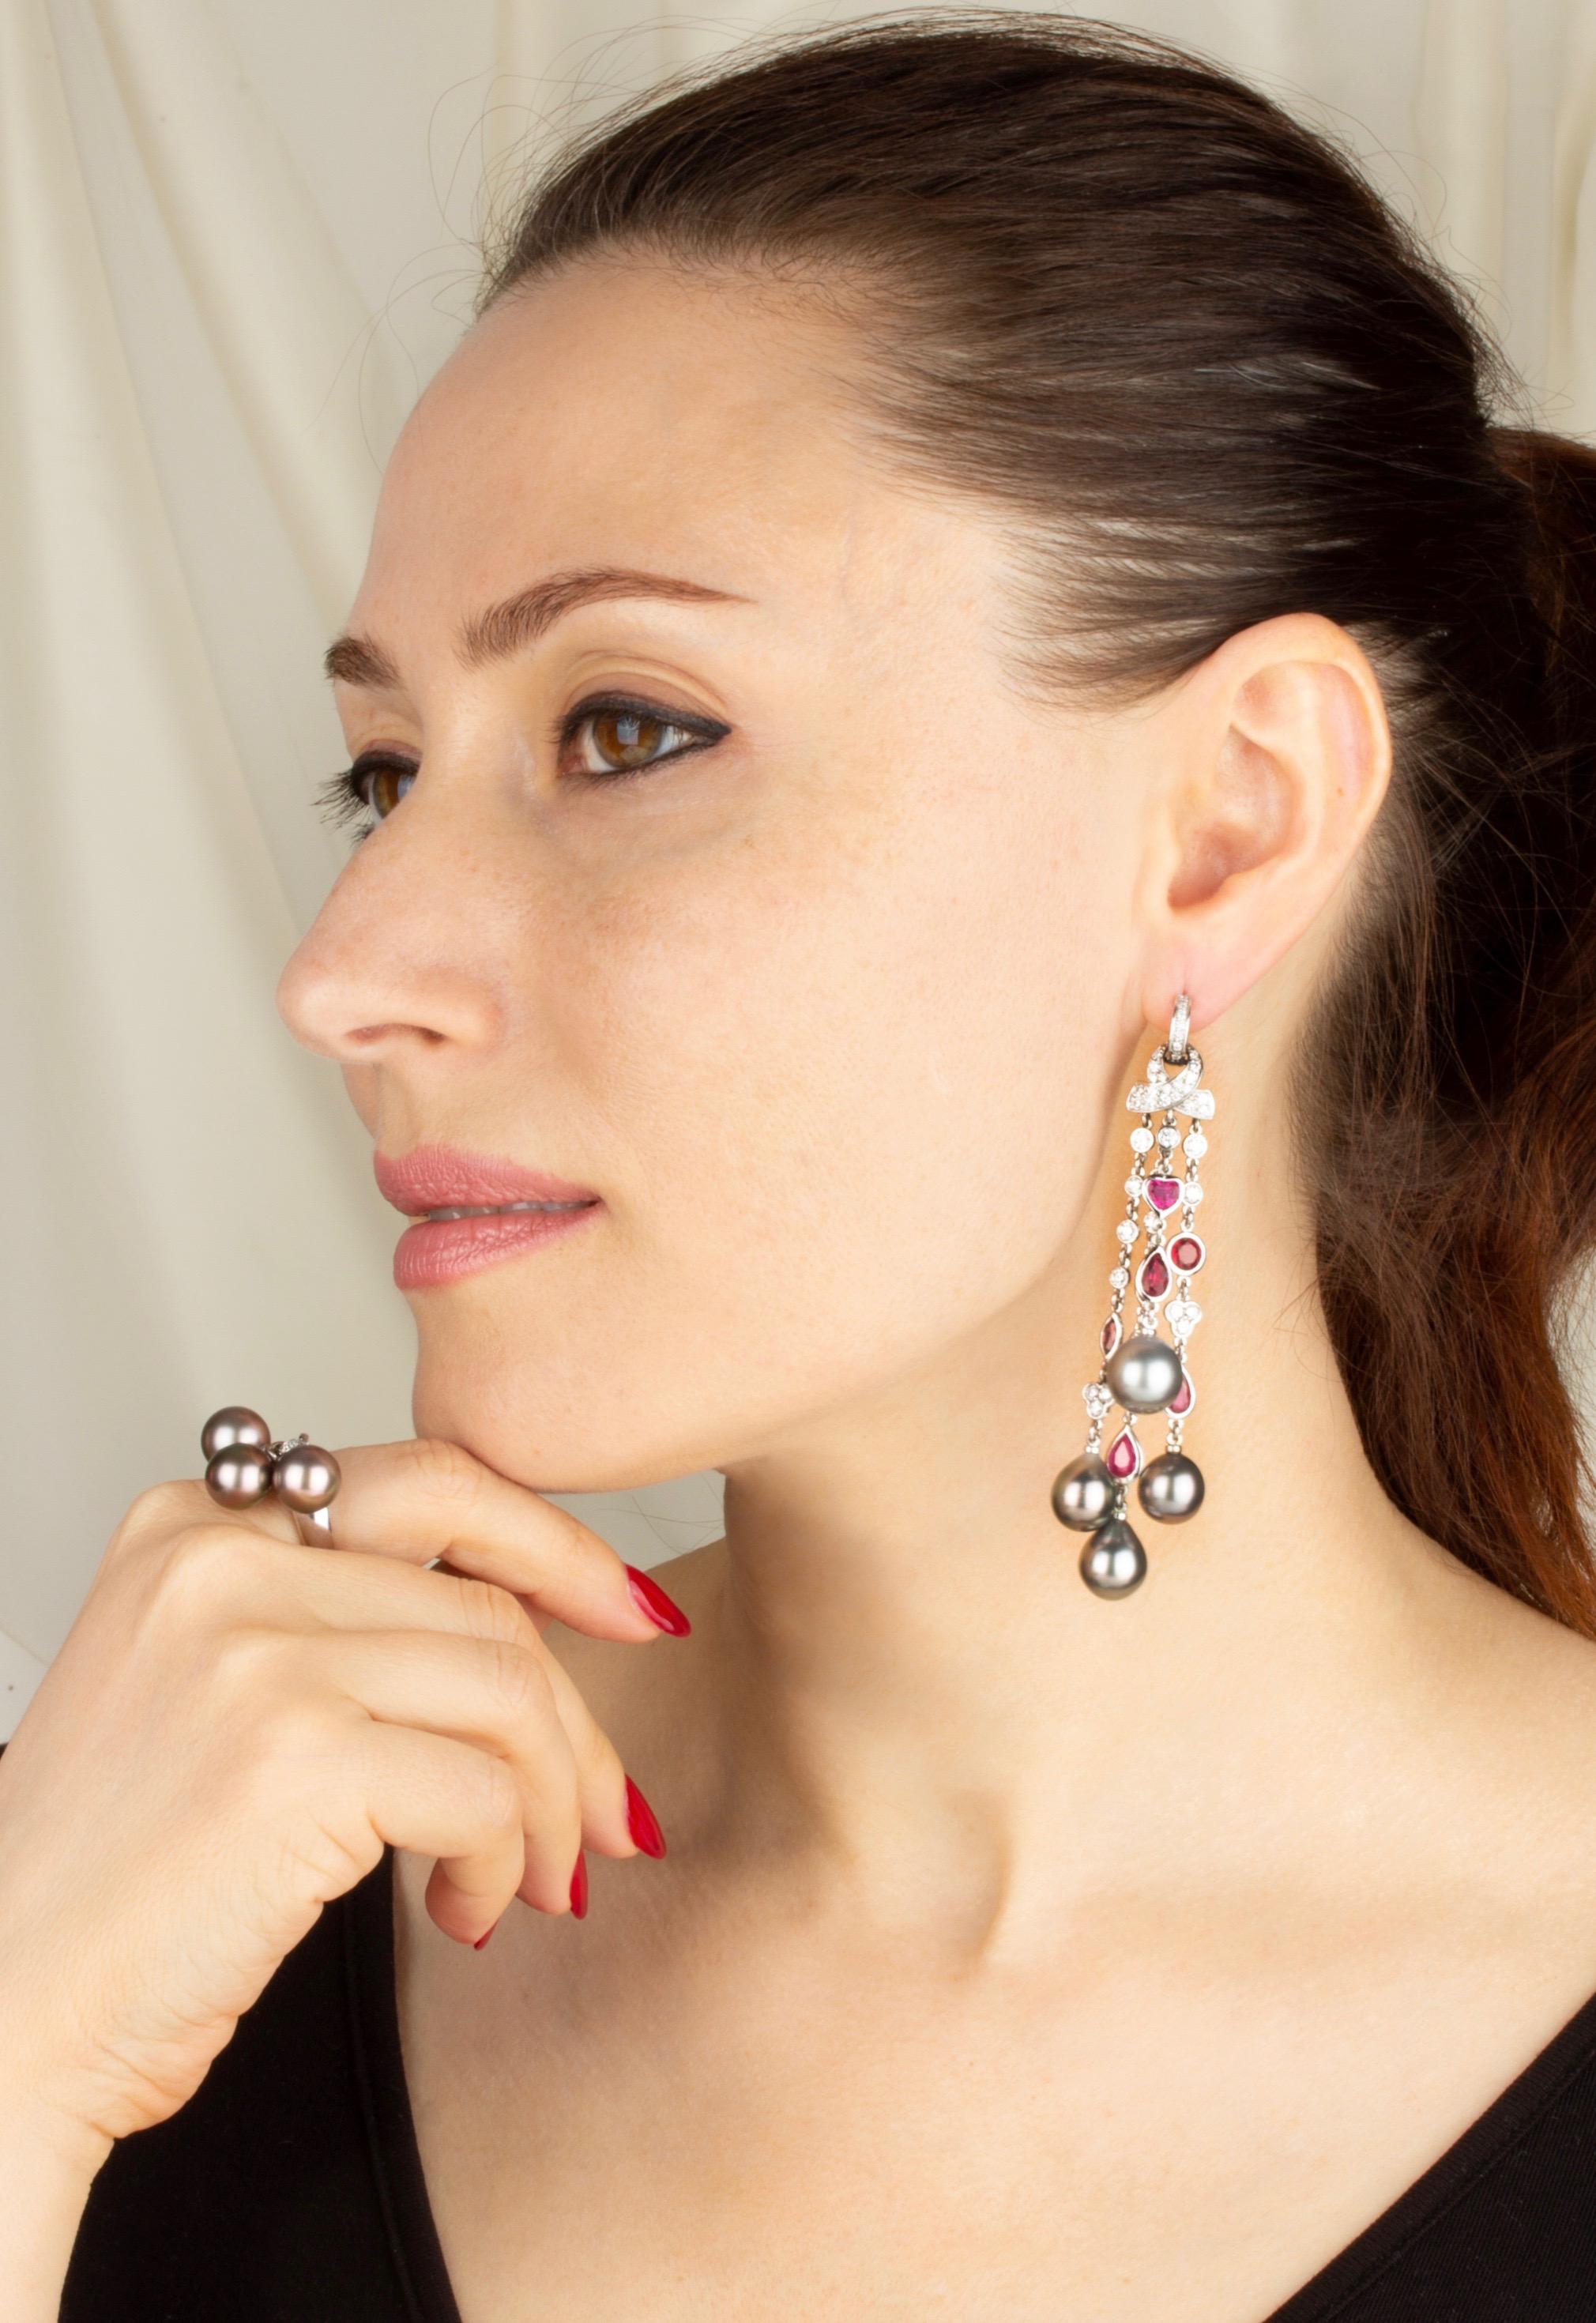 Die Diamant-, Rubin- und Perlen-Kronleuchter-Ohrringe bestehen aus einer Kaskade mit 8 Südseeperlen von 12/11 mm Durchmesser. Die unbehandelten Tahiti-Perlen haben ein wunderschönes Perlmutt und ihre natürliche Farbe und ihr hoher Glanz wurden in